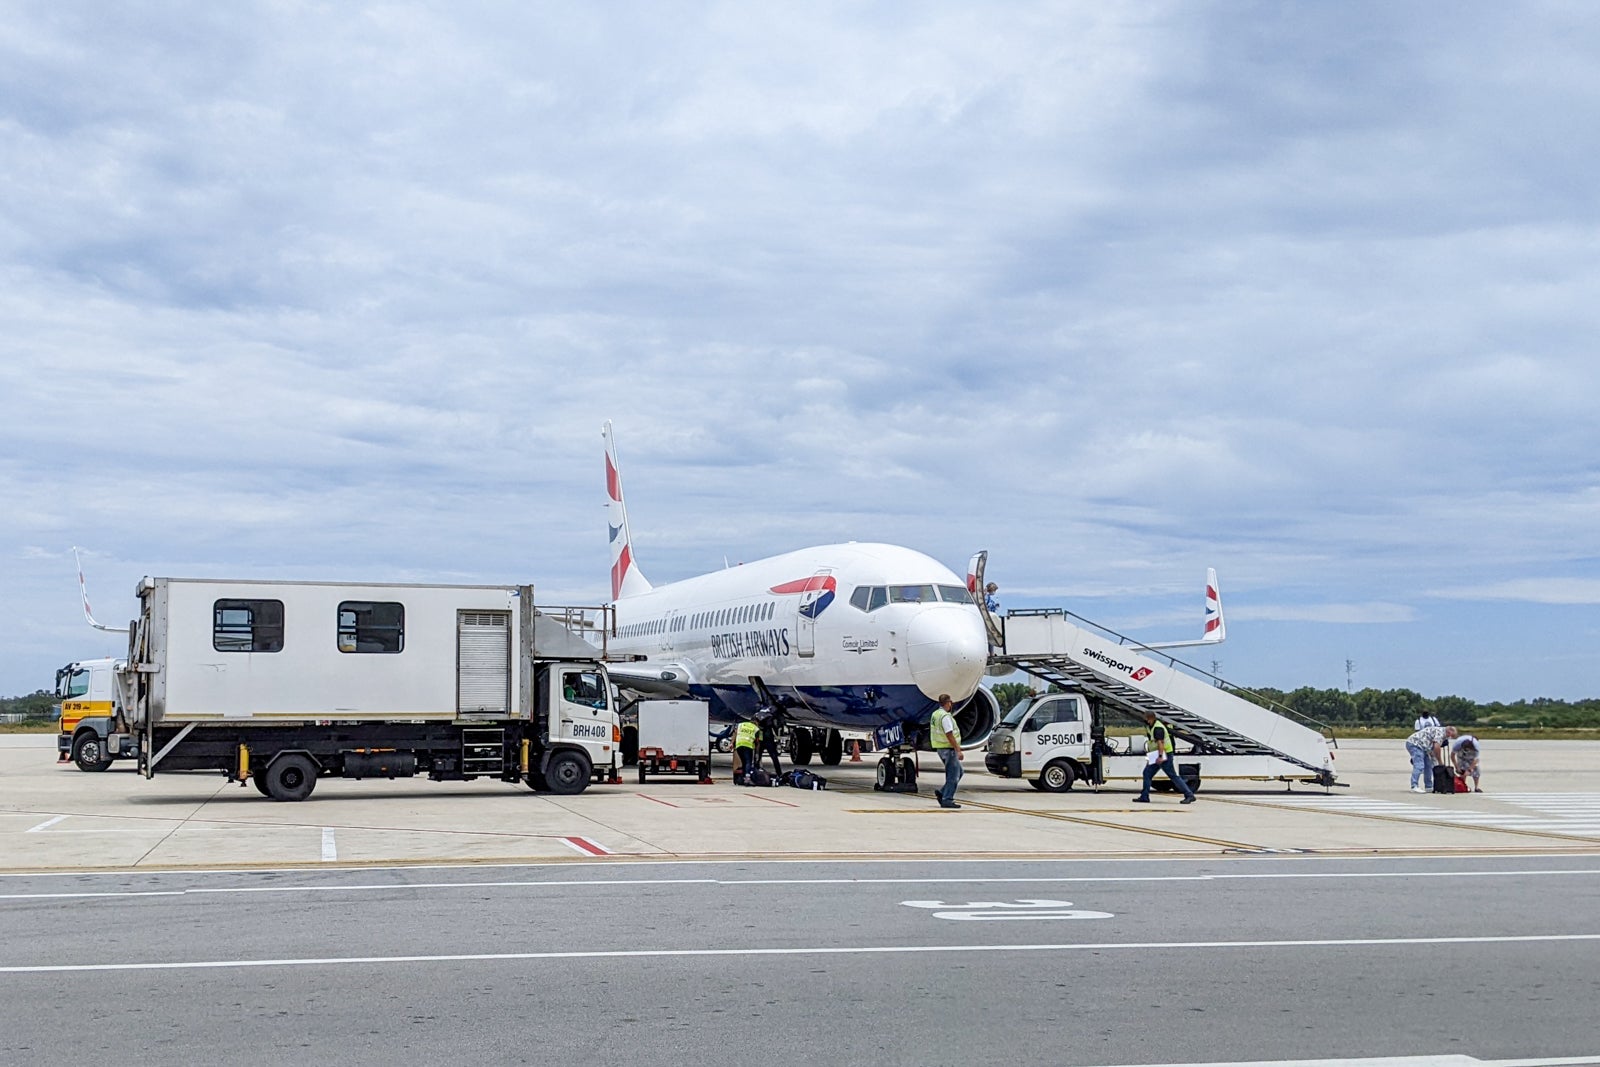 Comair British Airways plane. (Photo by Katie Genter/The Points Guy)